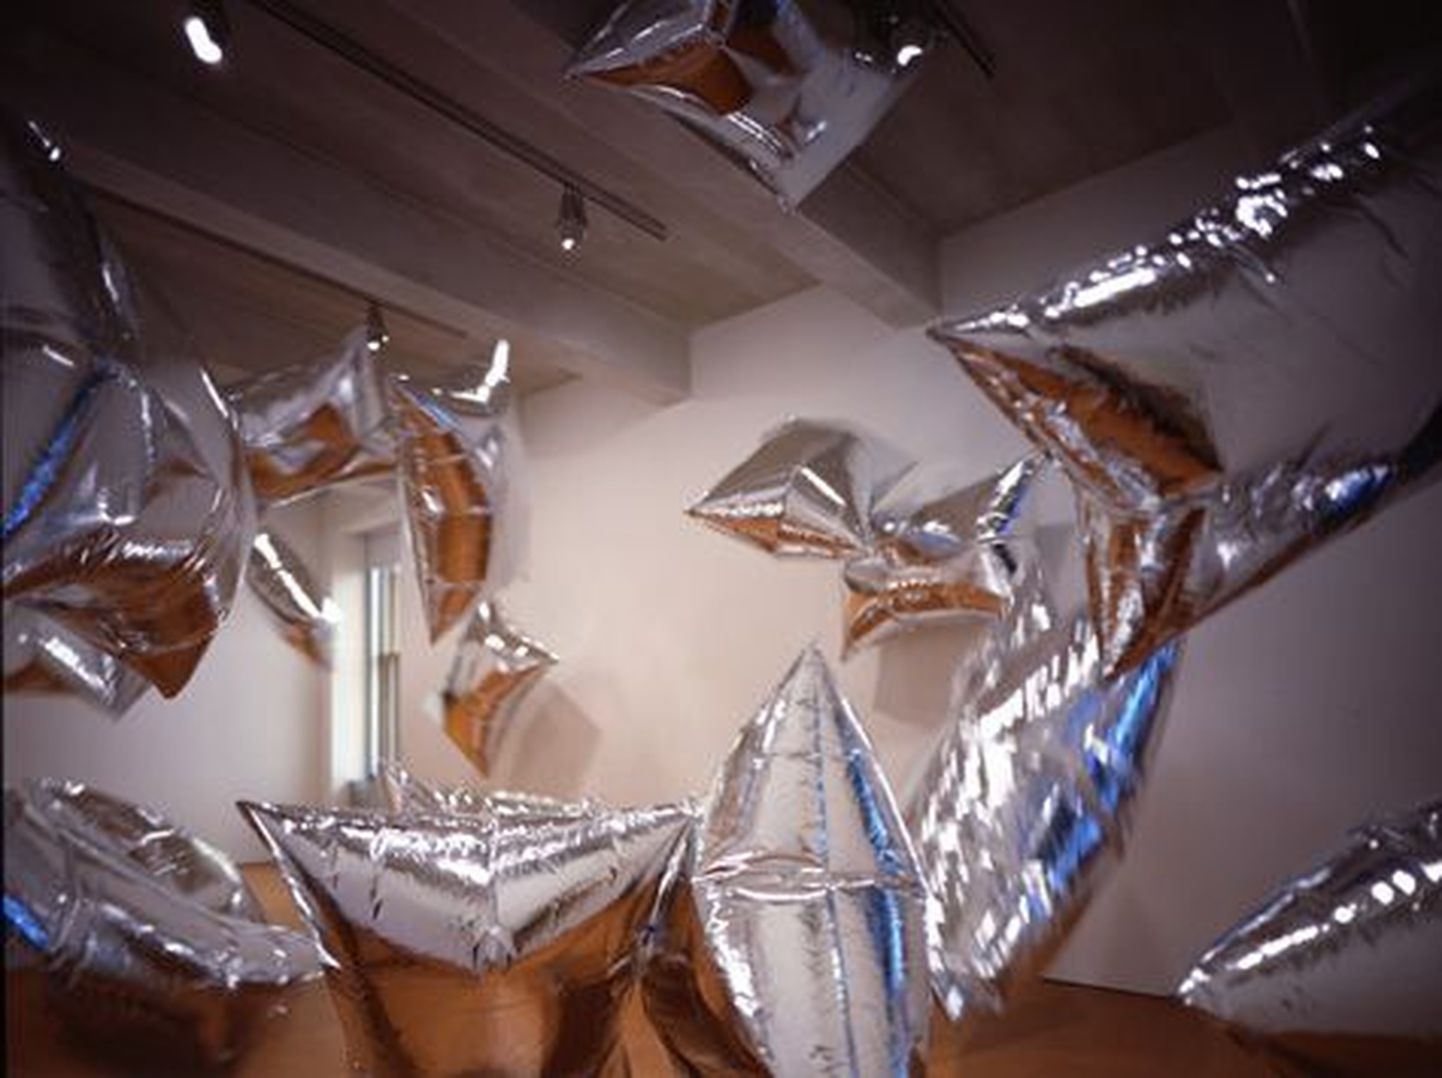 Nätusel on eksponeeritud Andy Warholi ja Billy Klüveri koostööna valminud kurikuulus installatsioon “Hõbepilved” (“Silver Clouds”).